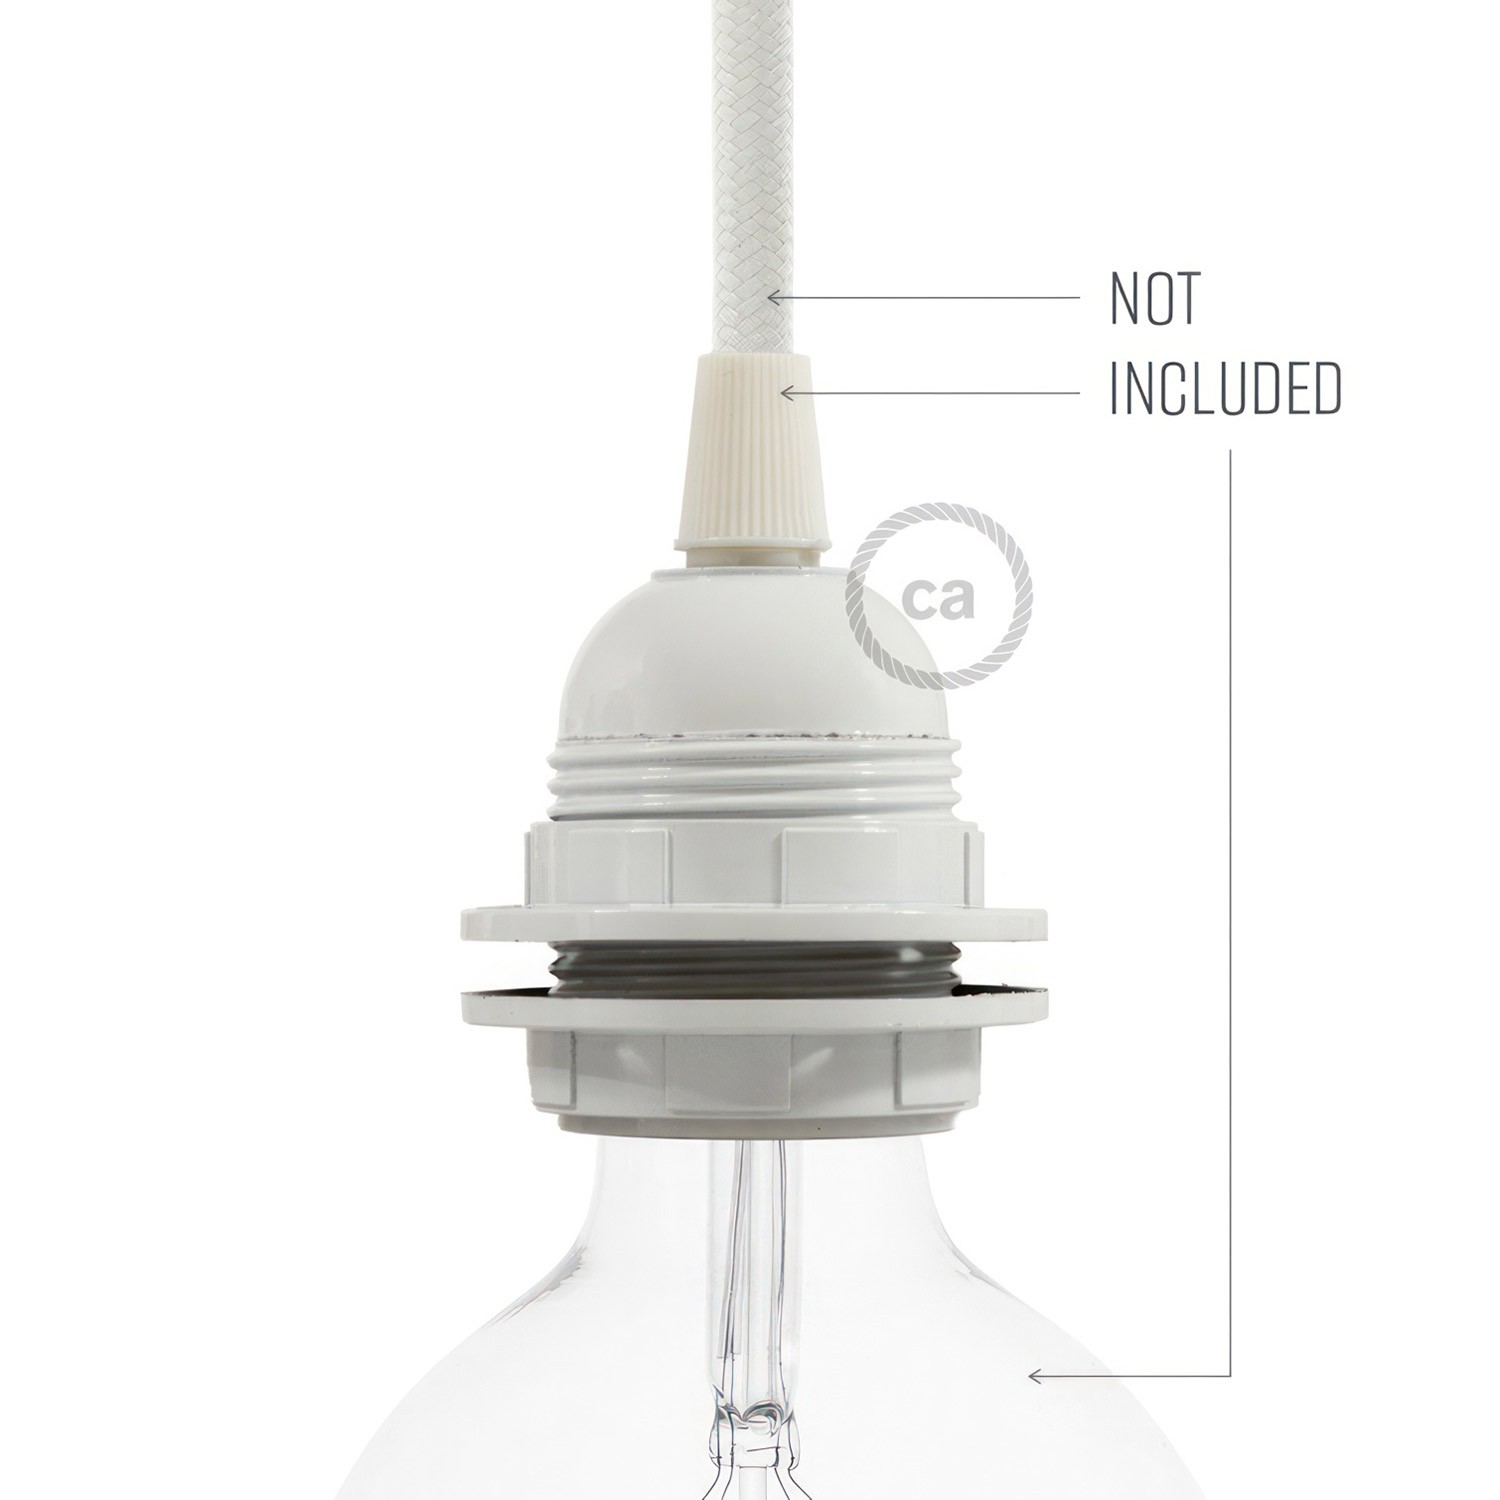 E27-Lampenfassungs-Kit aus Bakelit mit Doppelklemmring für Lampenschirme